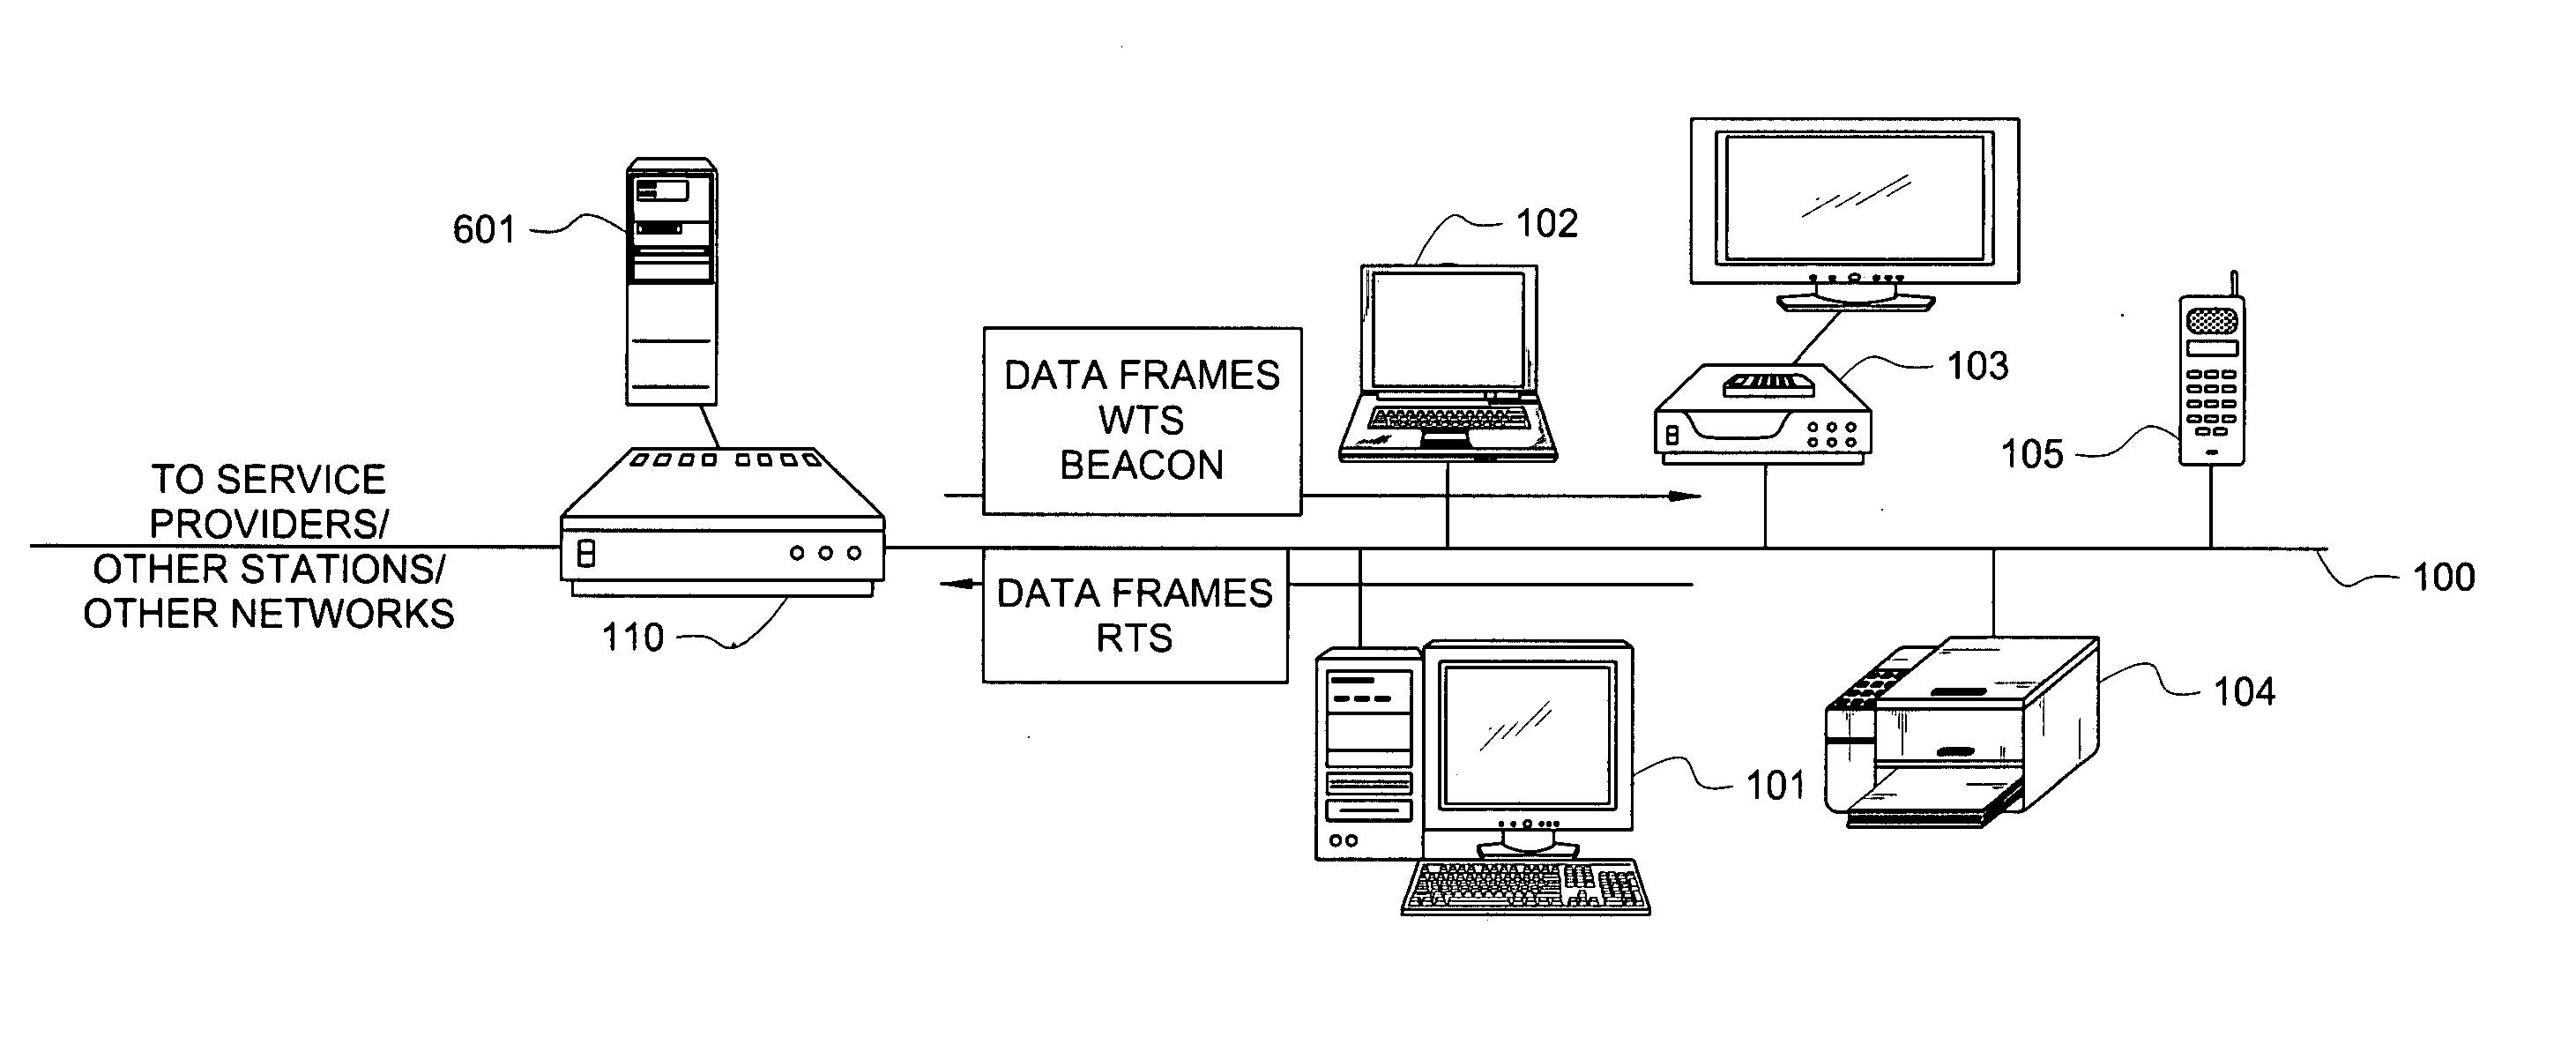 Media access control architecture